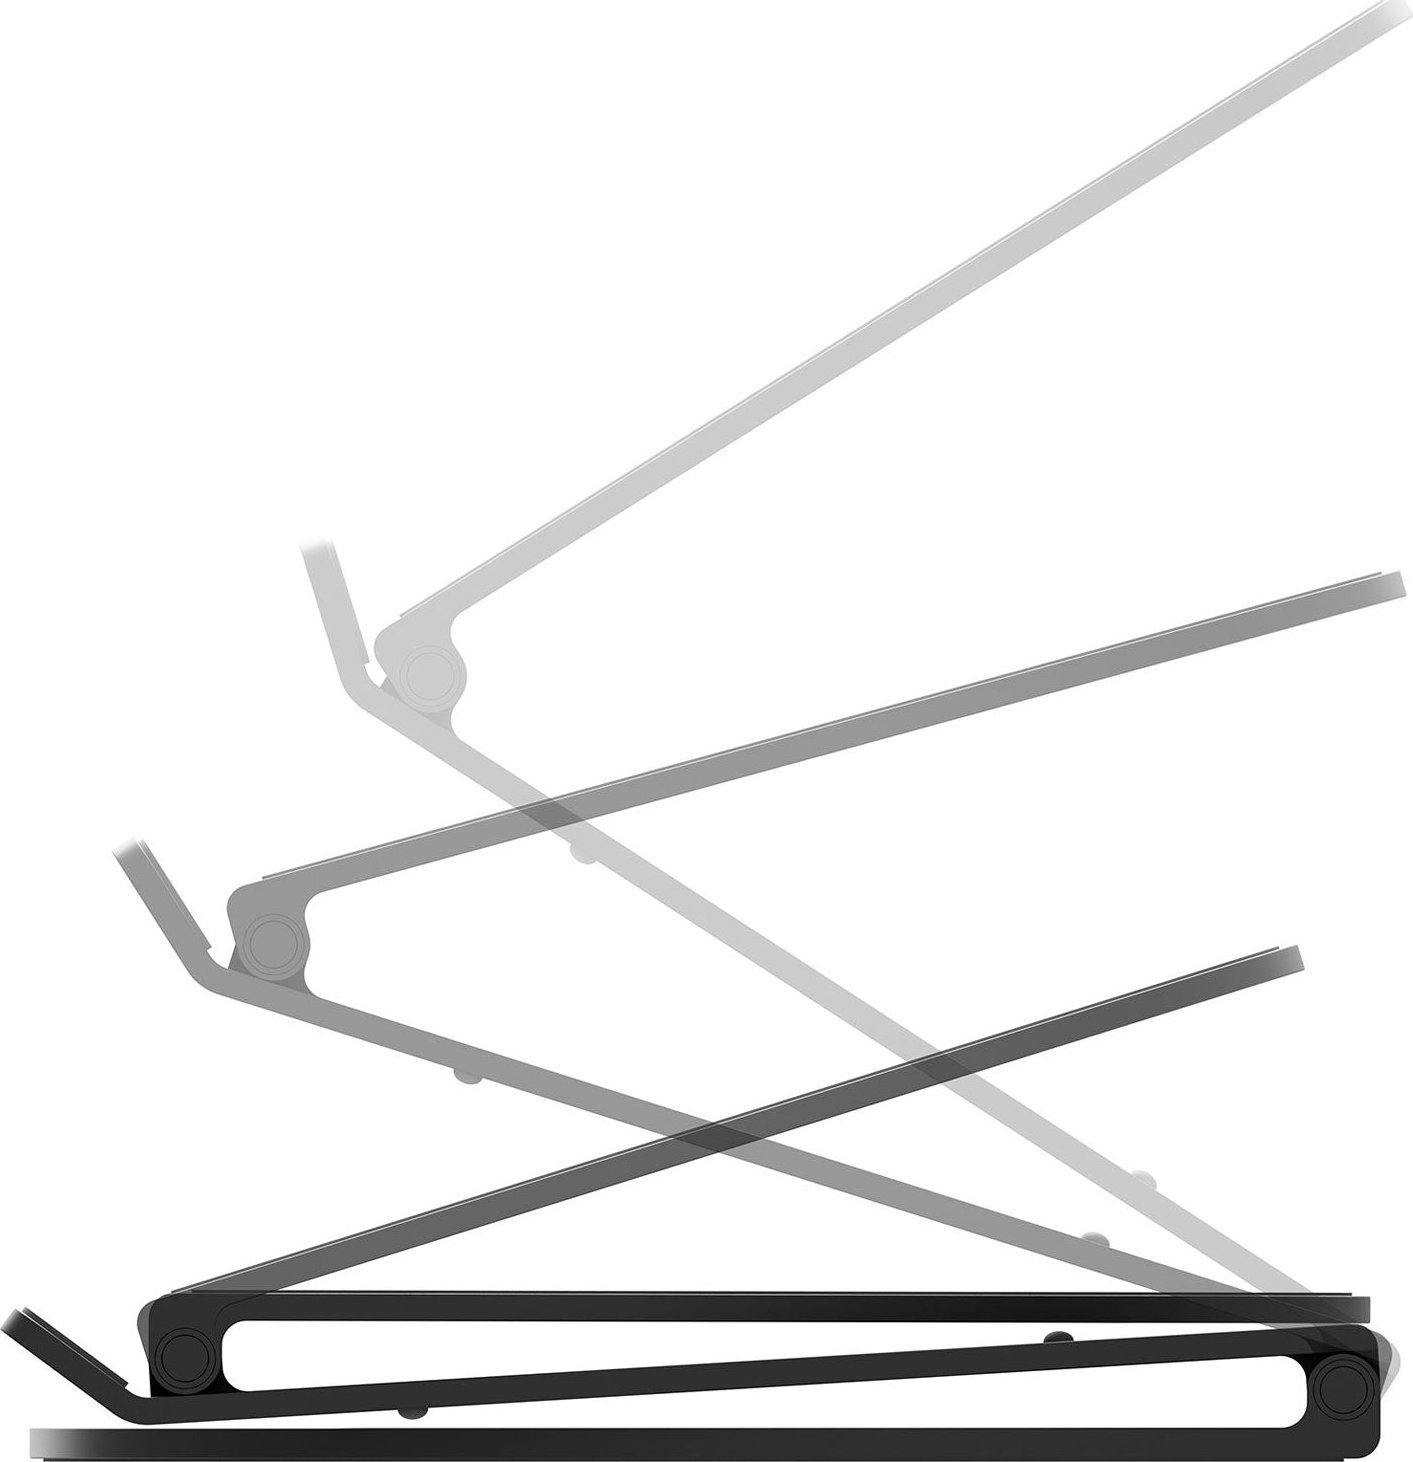 Suport pentru laptop Twelve South Curve Flex - bază din aluminiu pentru MacBook negru (TS-2201)